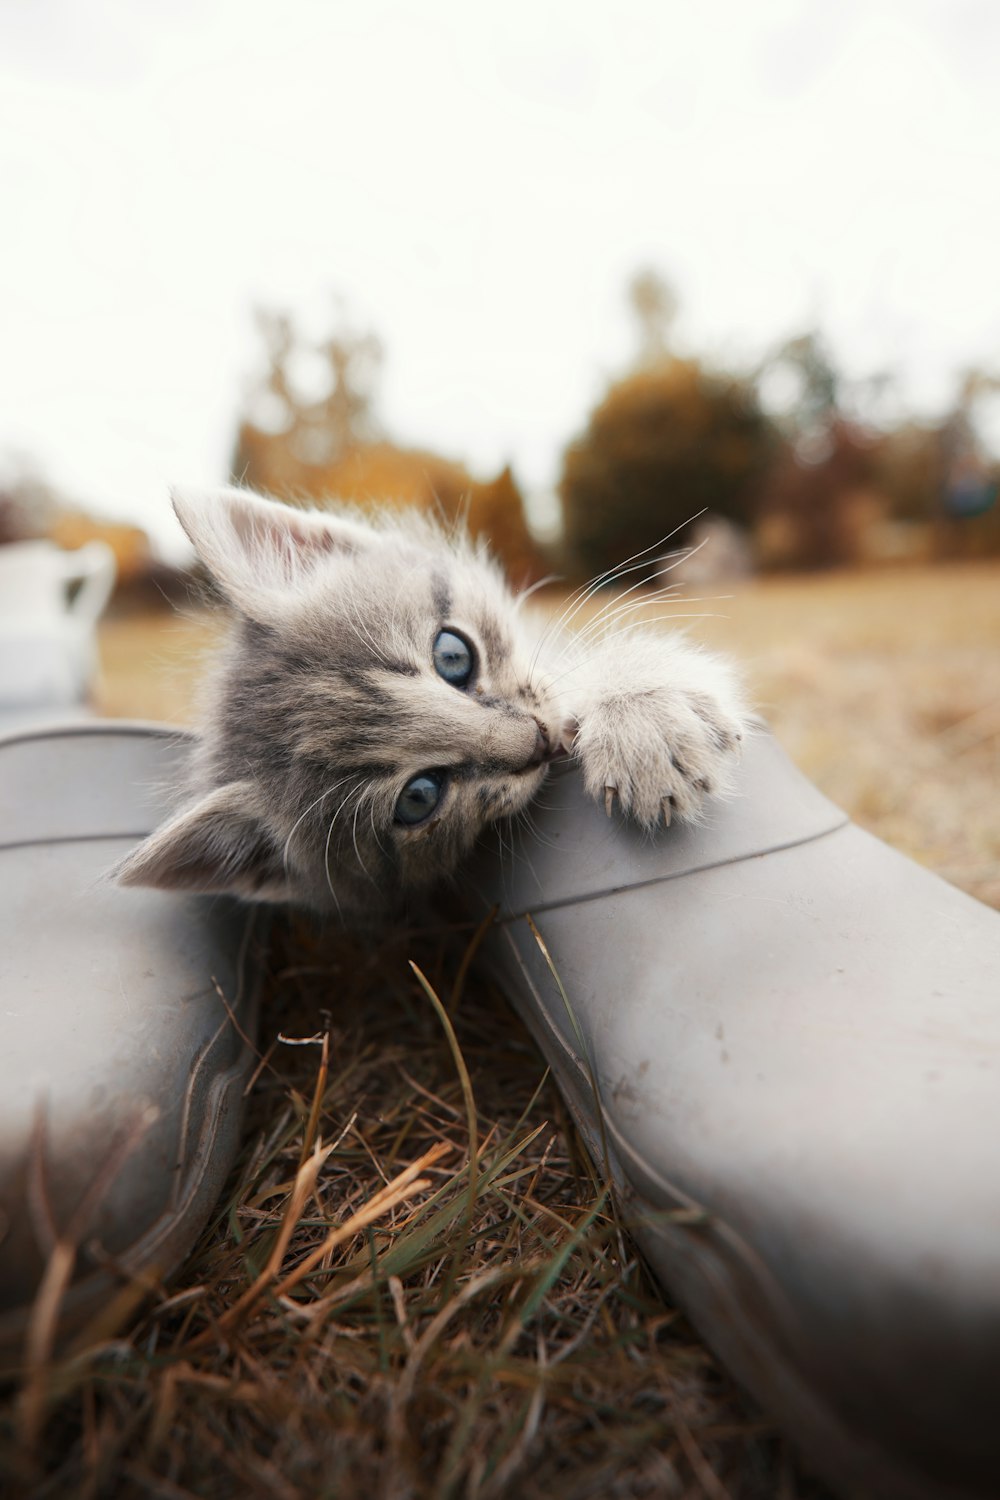 a kitten in a metal bucket